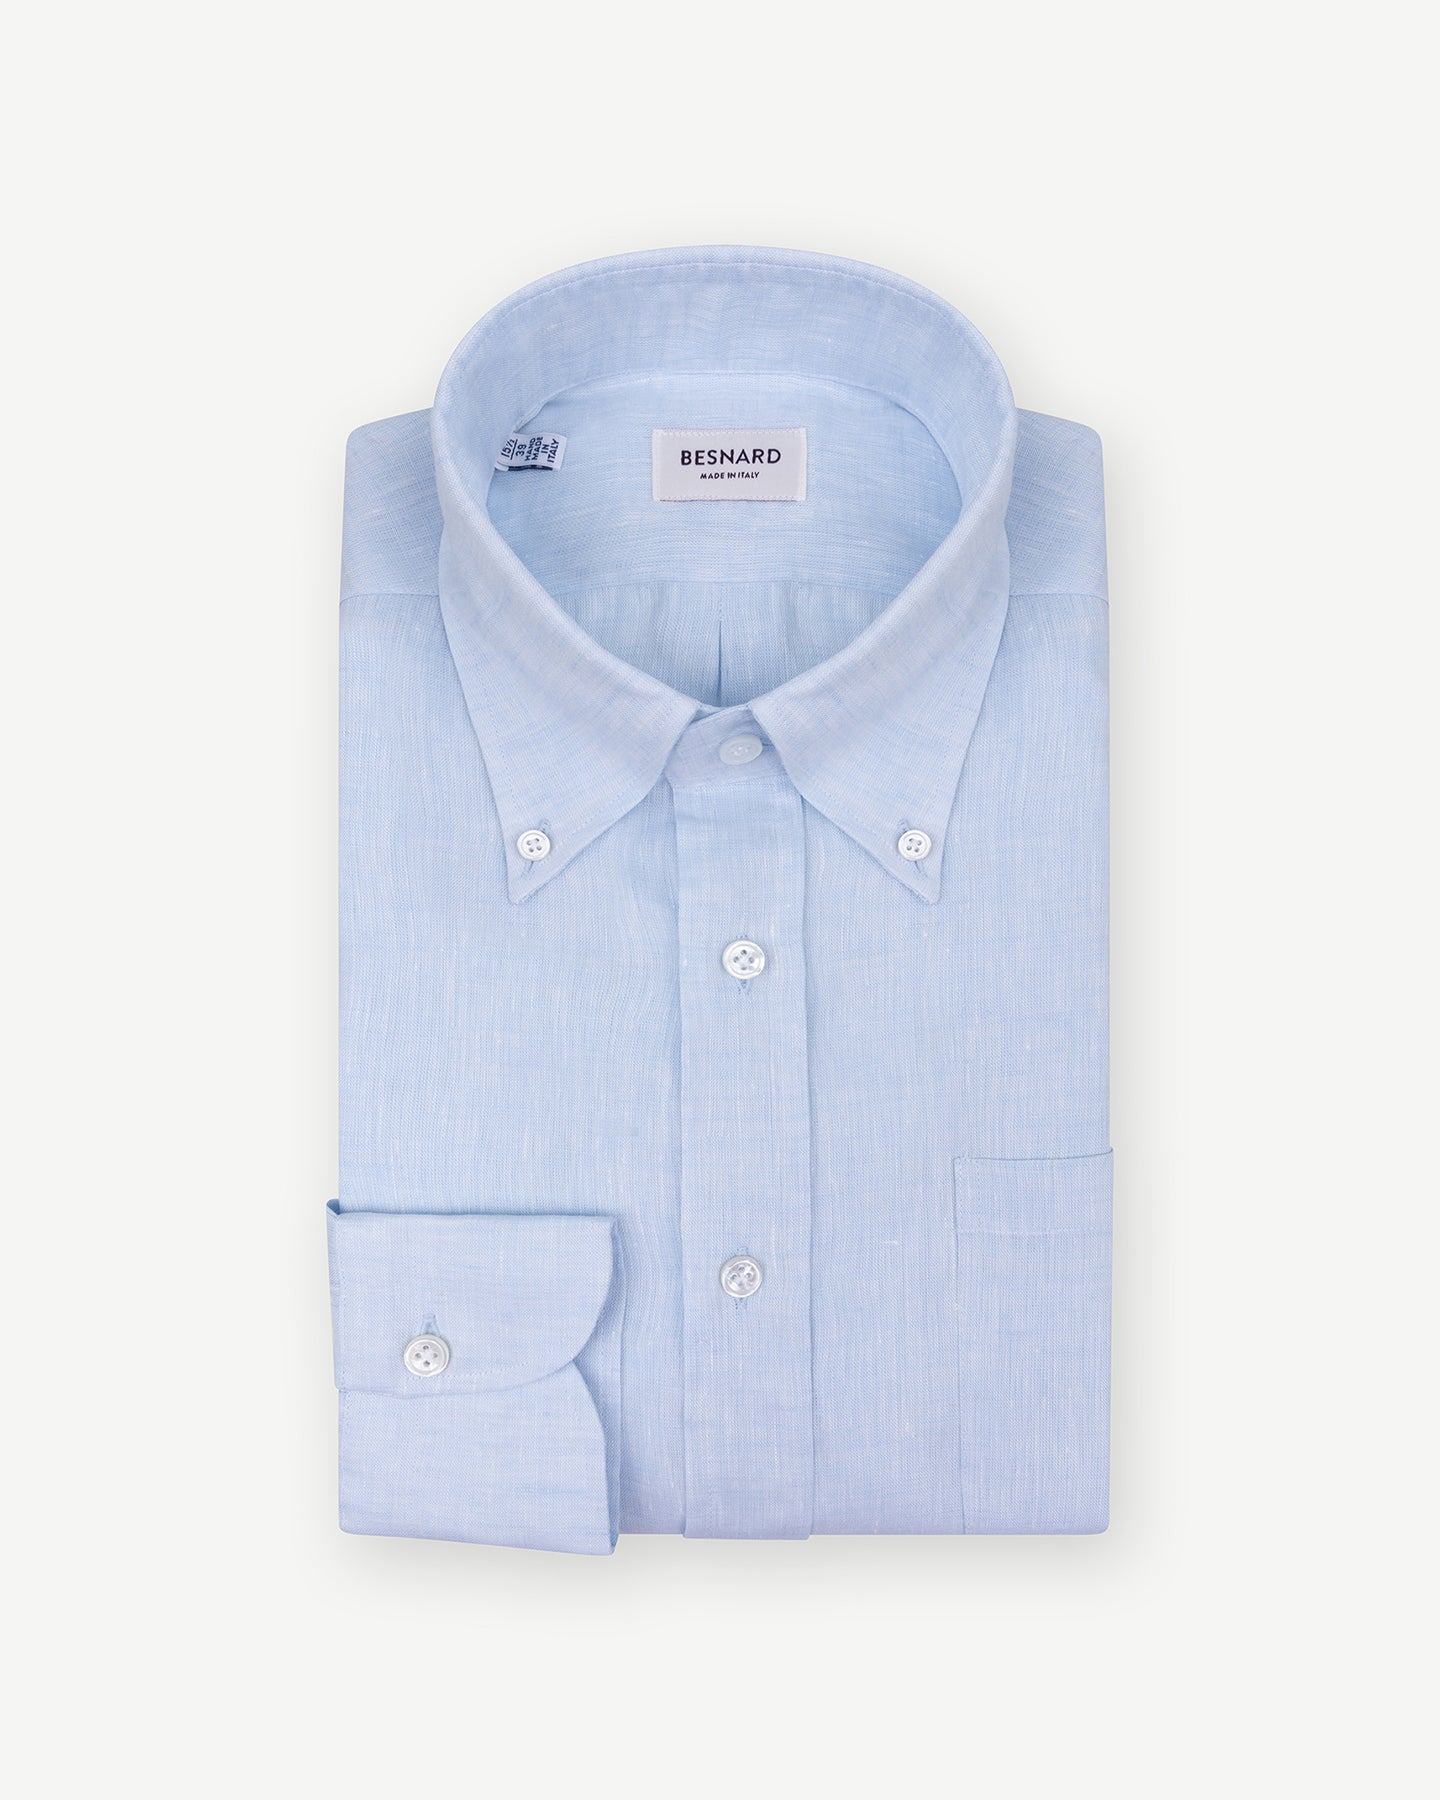 Light blue linen button down shirt